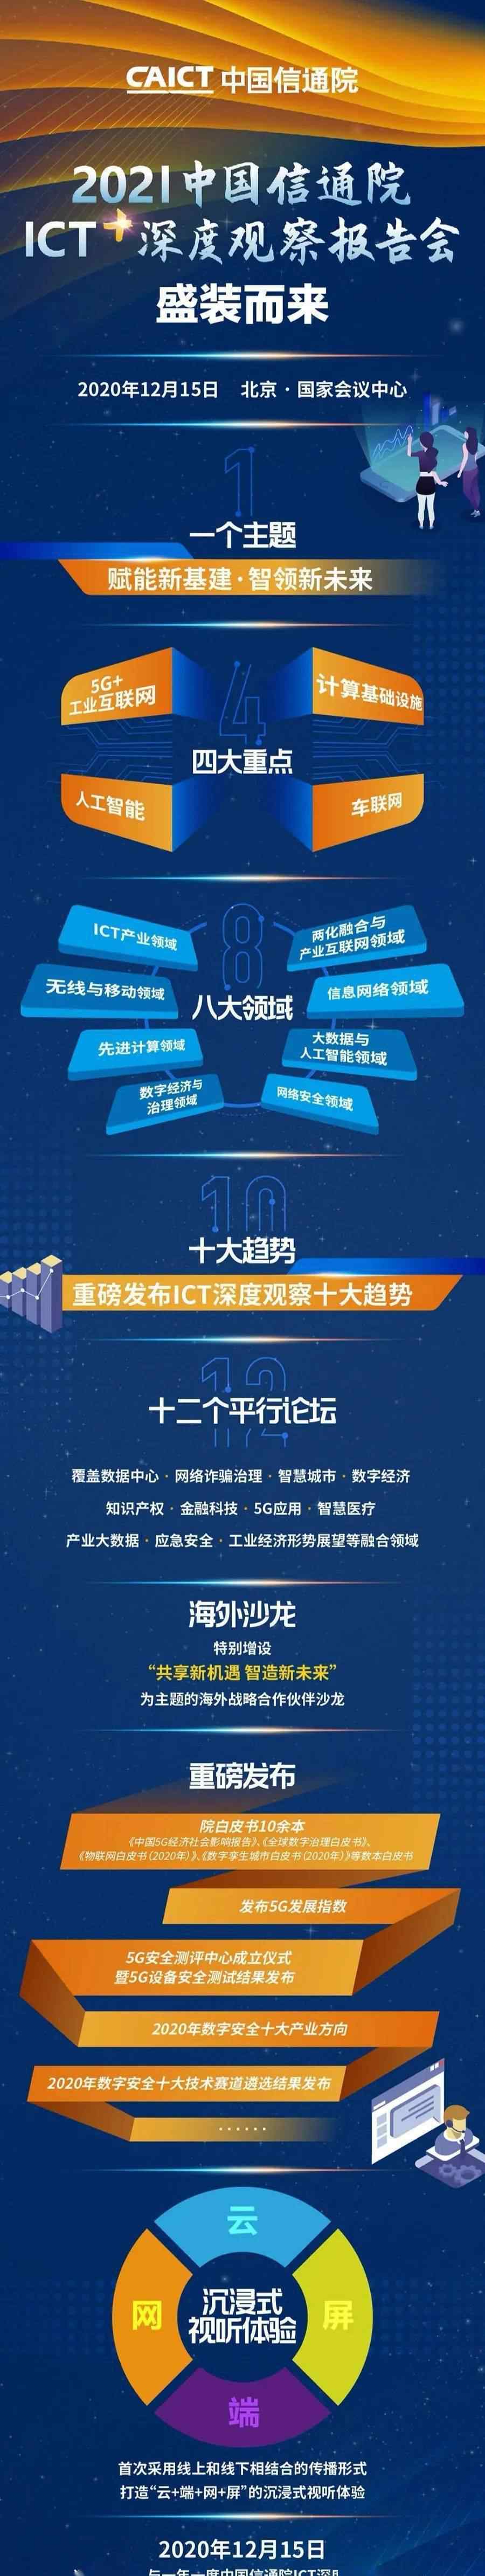 中国科讯 直播预告 | 2021 中国信通院ICT+深度观察报告会